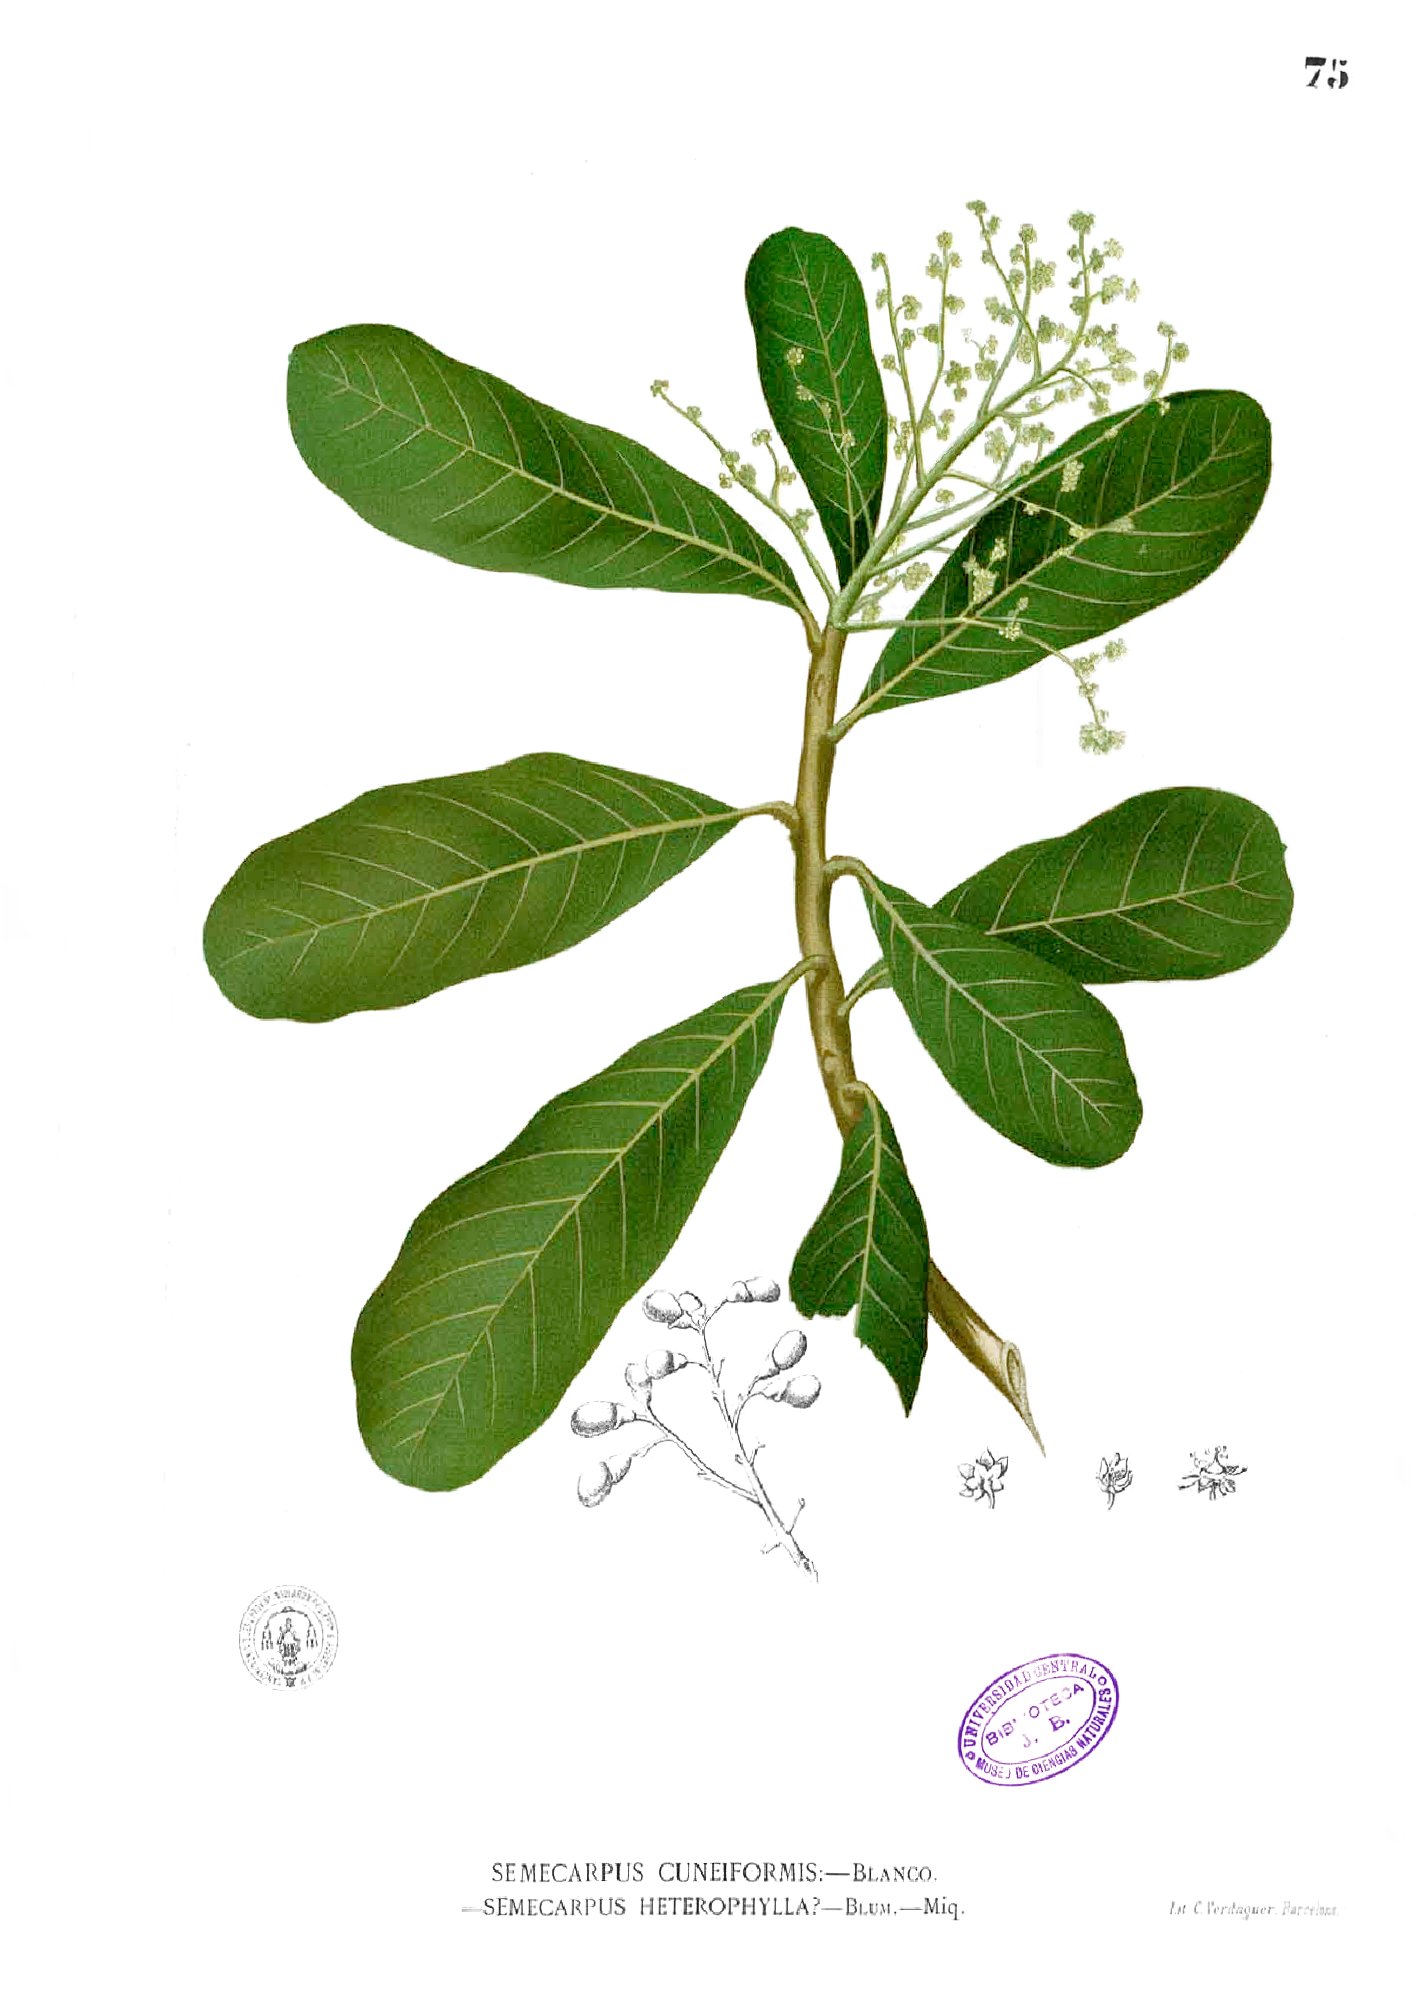 Semecarpus microcarpa Blanco1.75